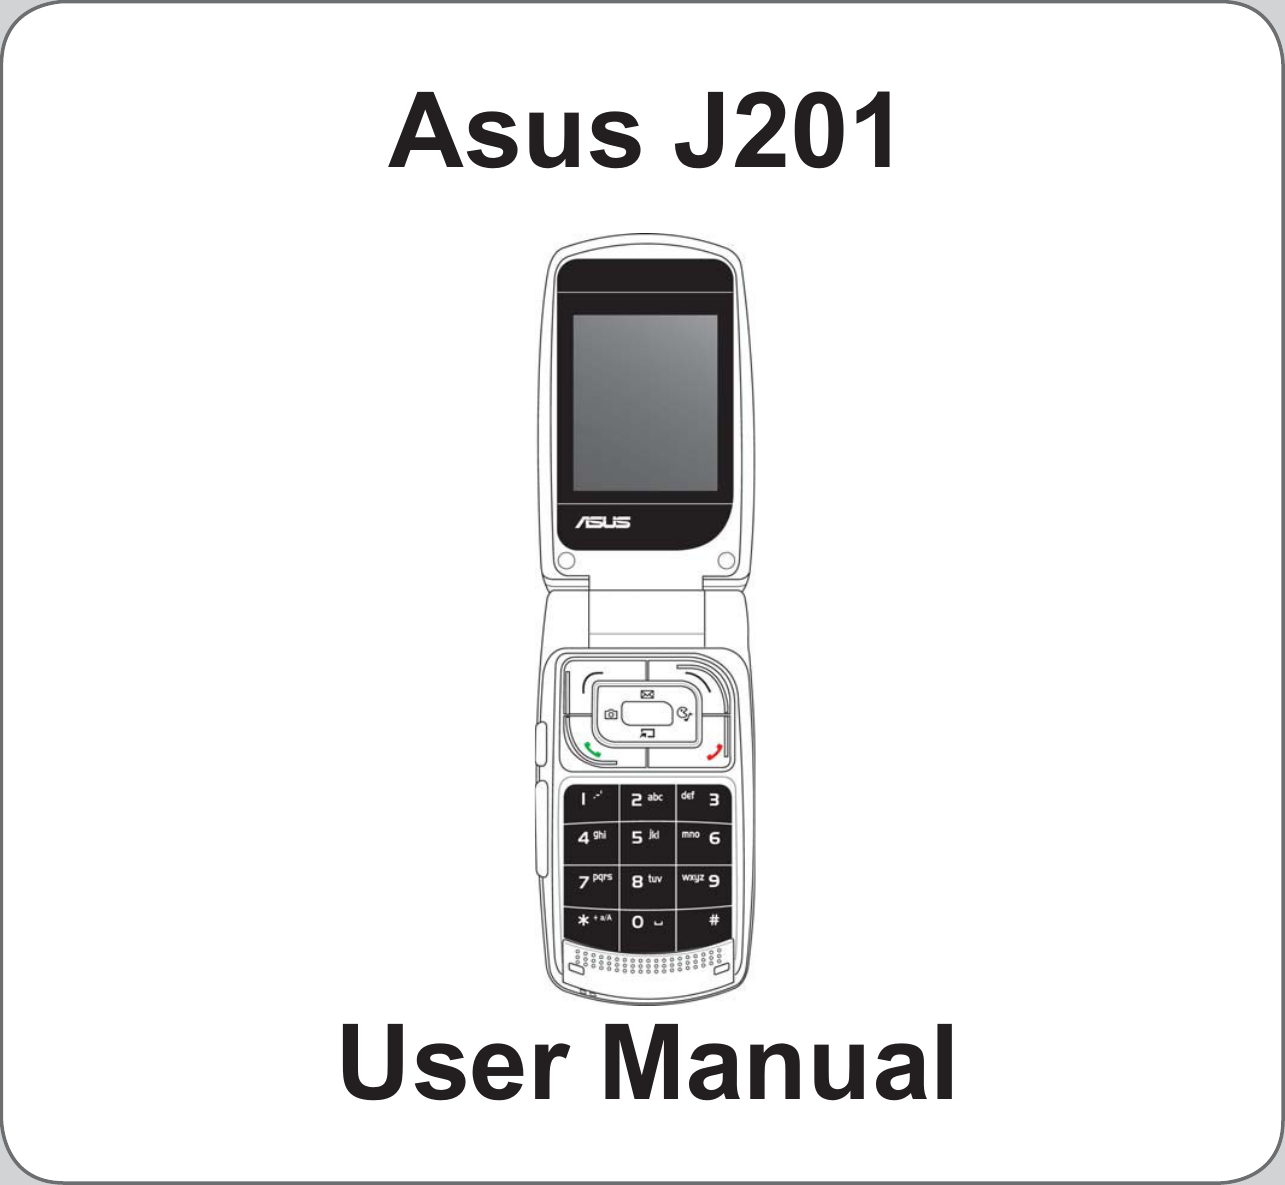 Asus J201User Manual